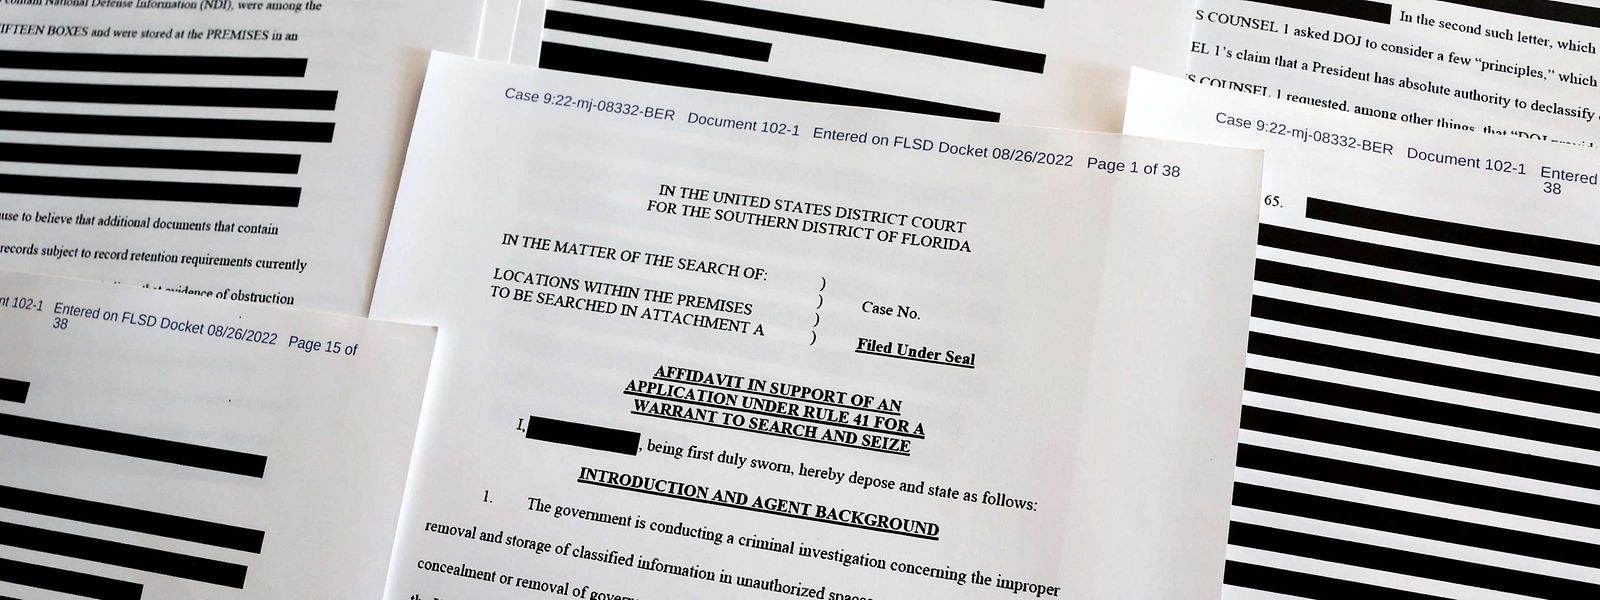 Le document Affidavit, en partie expurgé, révèle de nouveaux détails sur la descente de police dans le club privé de Donald Trump à Mar-a-Lago en Floride.